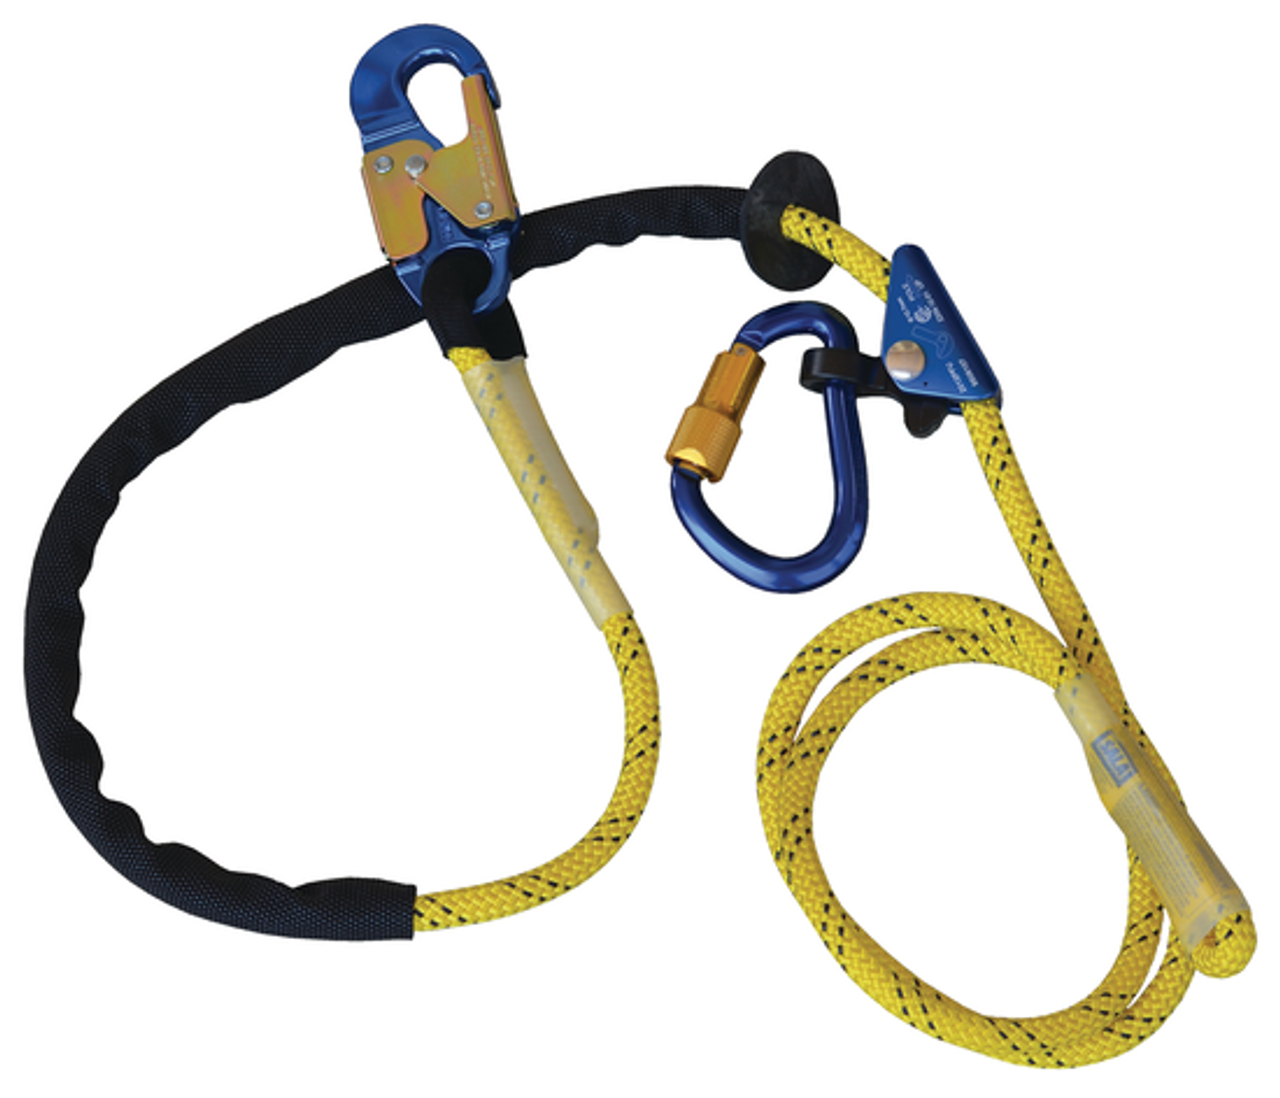 3M DBI-SALA Lineman Pole Climbing Kit Size D24 - 1050028 - Jendco Safety  Supply